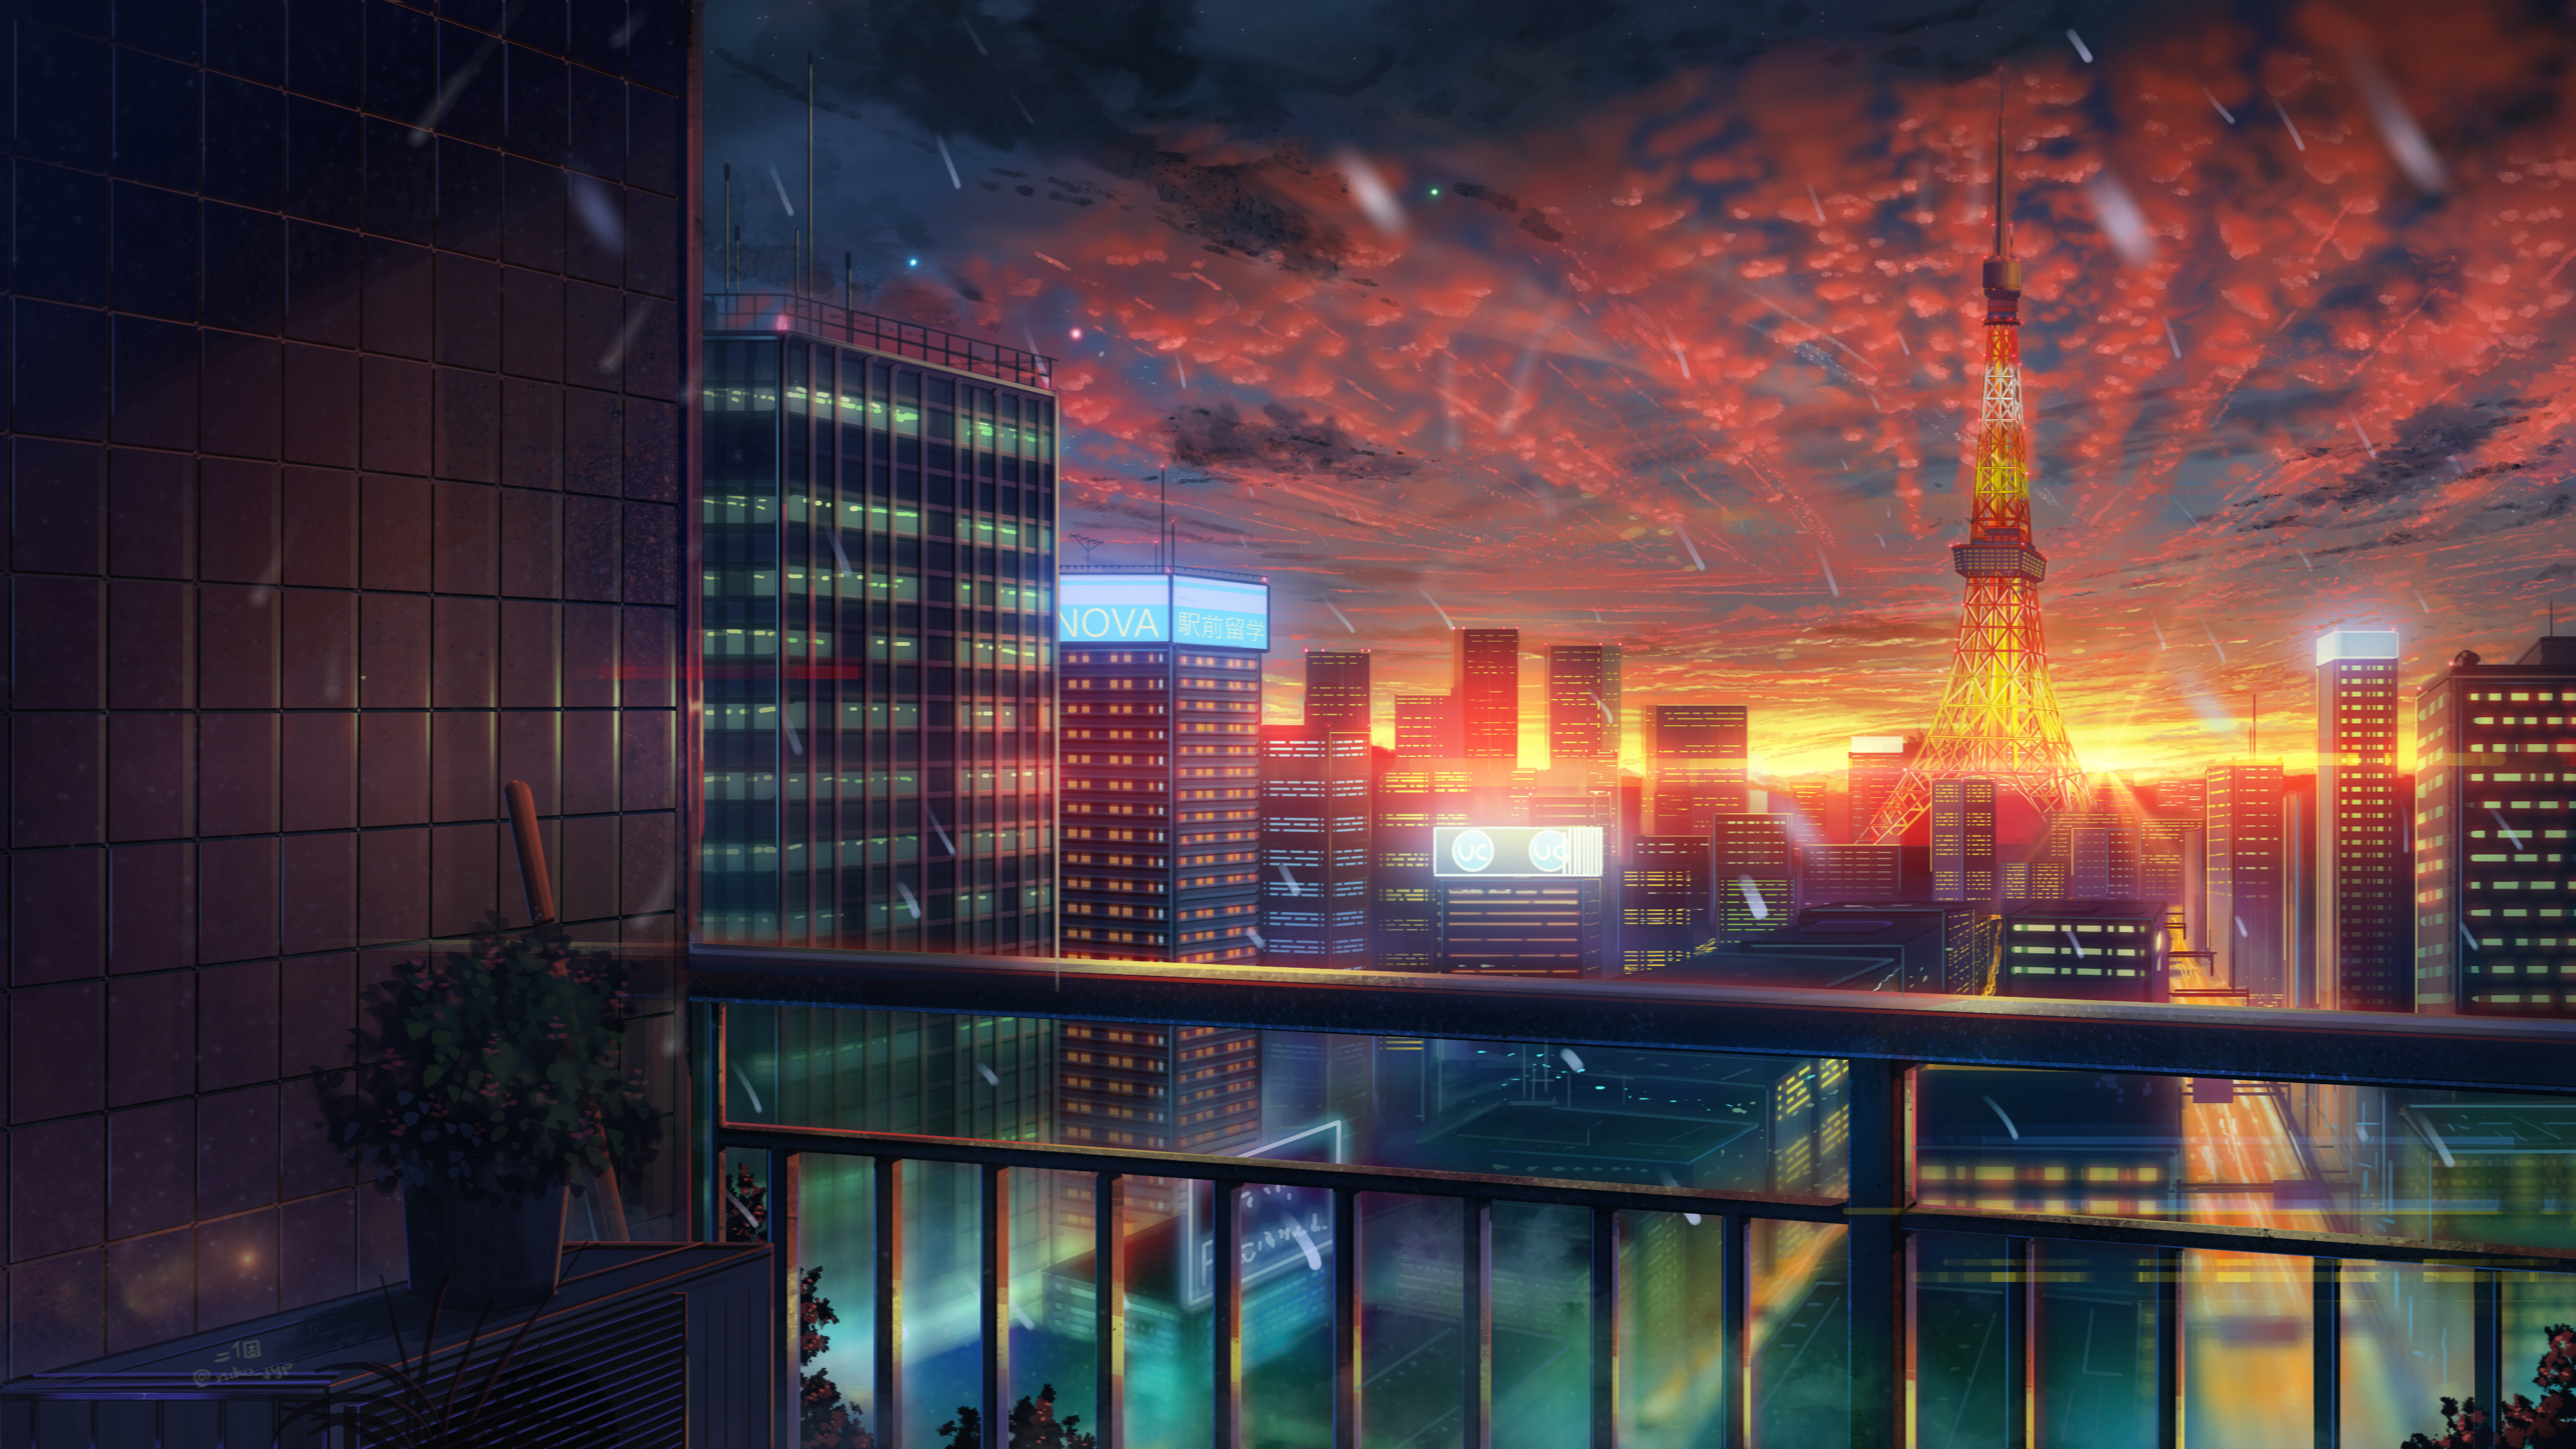 Anime Skyline Wallpapers